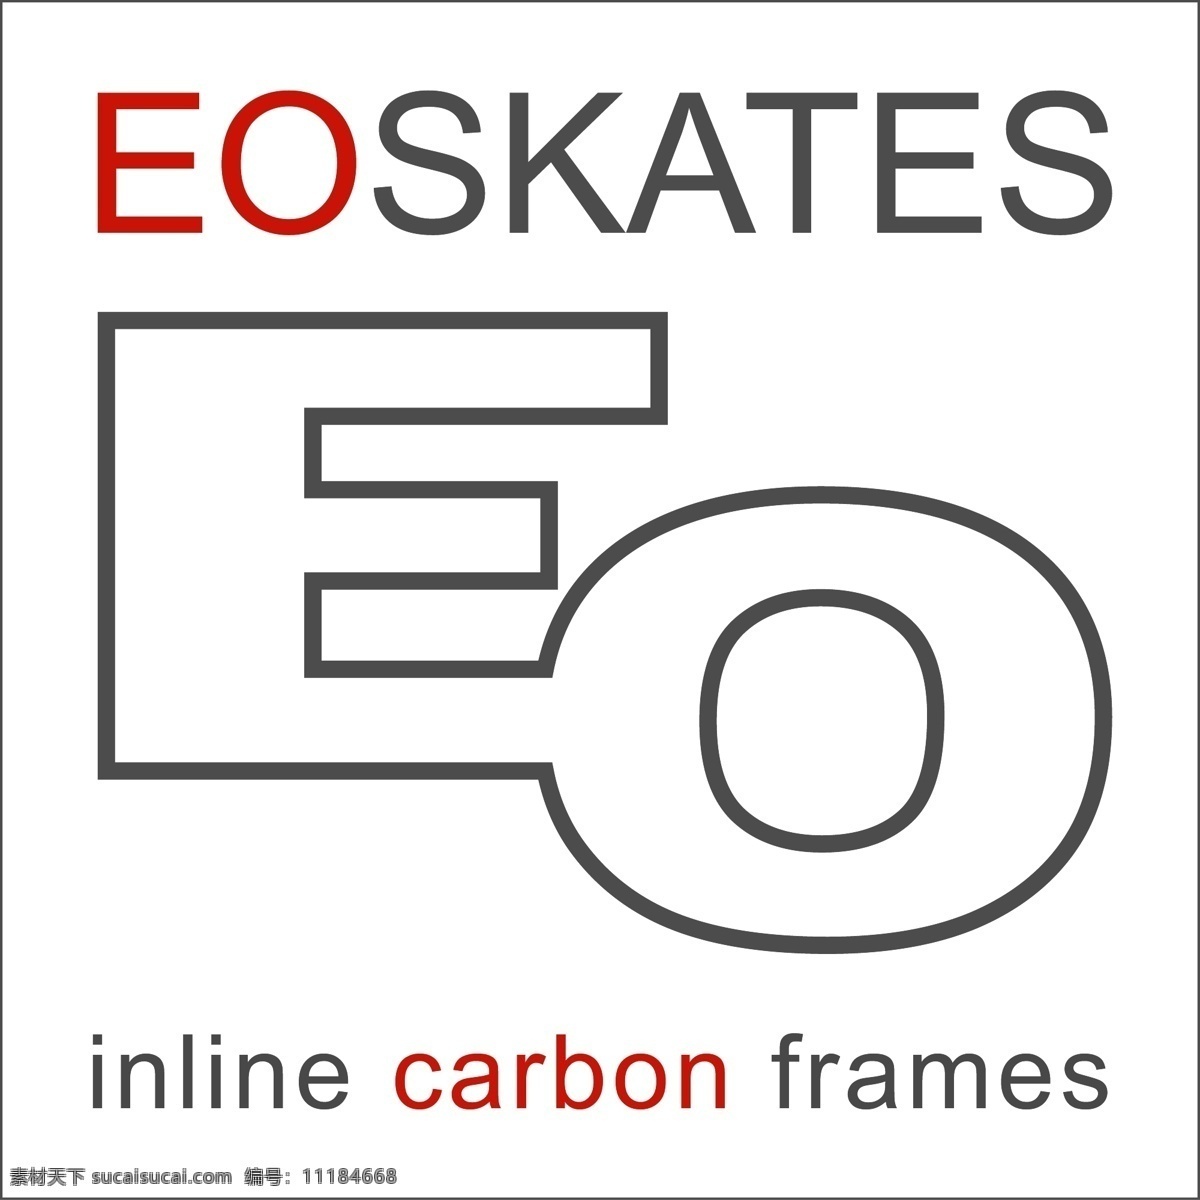 eo的溜冰鞋 矢量标志下载 免费矢量标识 商标 品牌标识 标识 矢量 免费 品牌 公司 白色